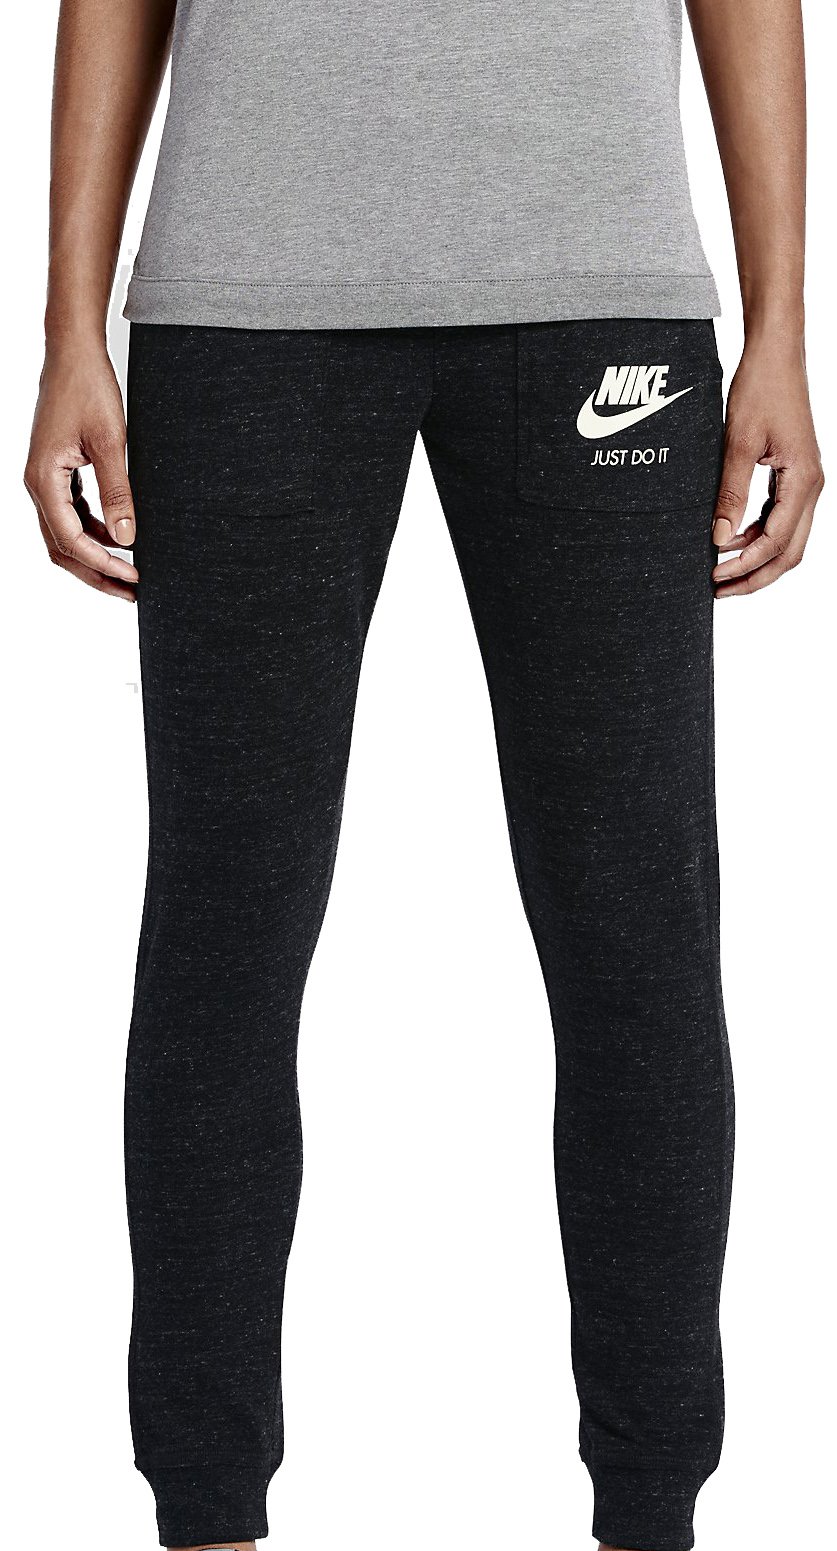 Tréninkové kalhoty Nike Gym Vintage Pant